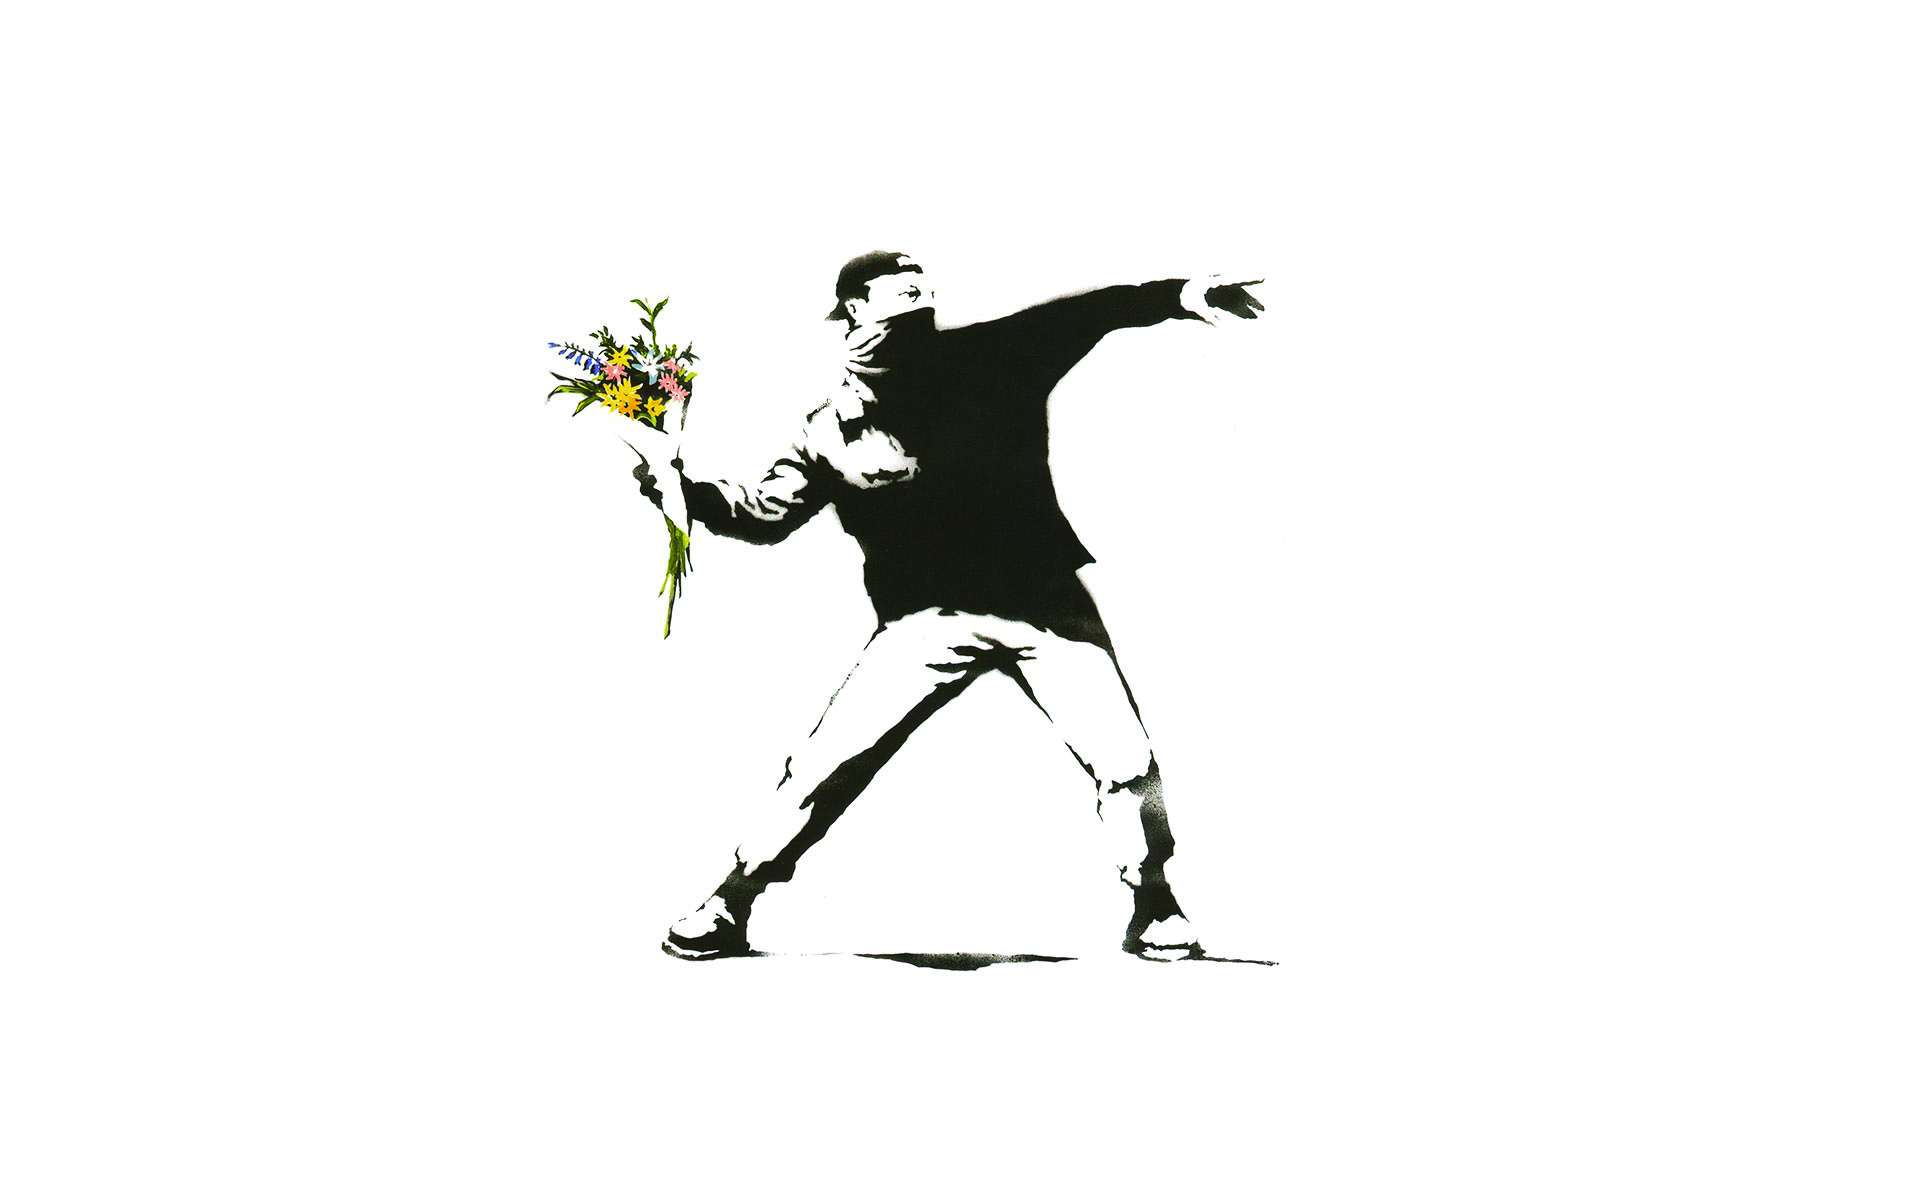 Fonds d'Ã©cran Banksy : tous les wallpapers Banksy